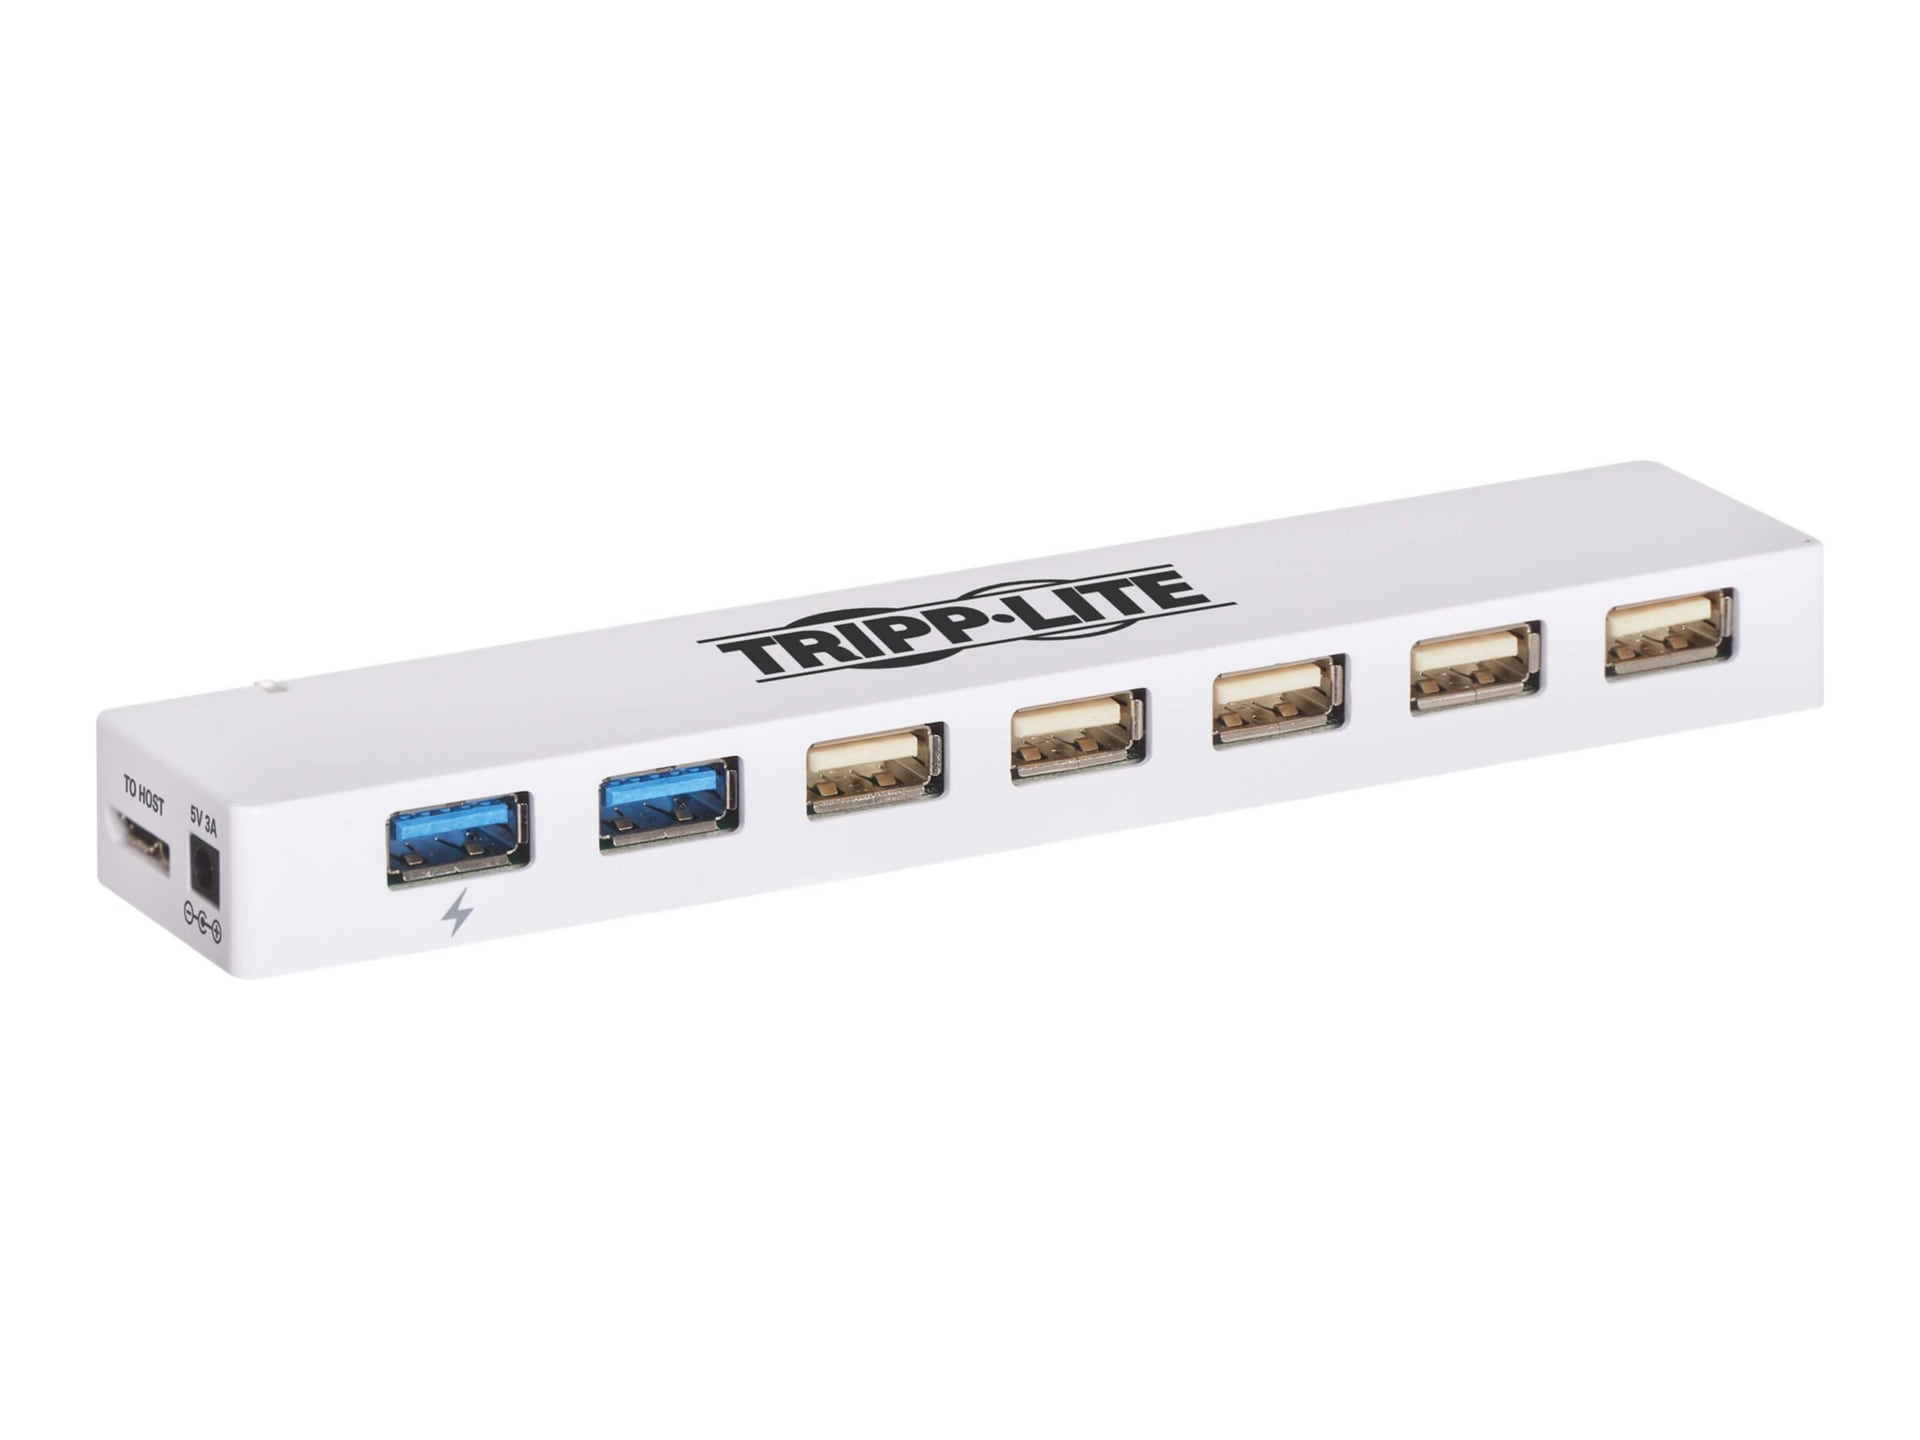 Tripp Lite USB Hub 7-Port 2 USB 3.0 / 5 USB 2.0 Ports Combo USB Charging